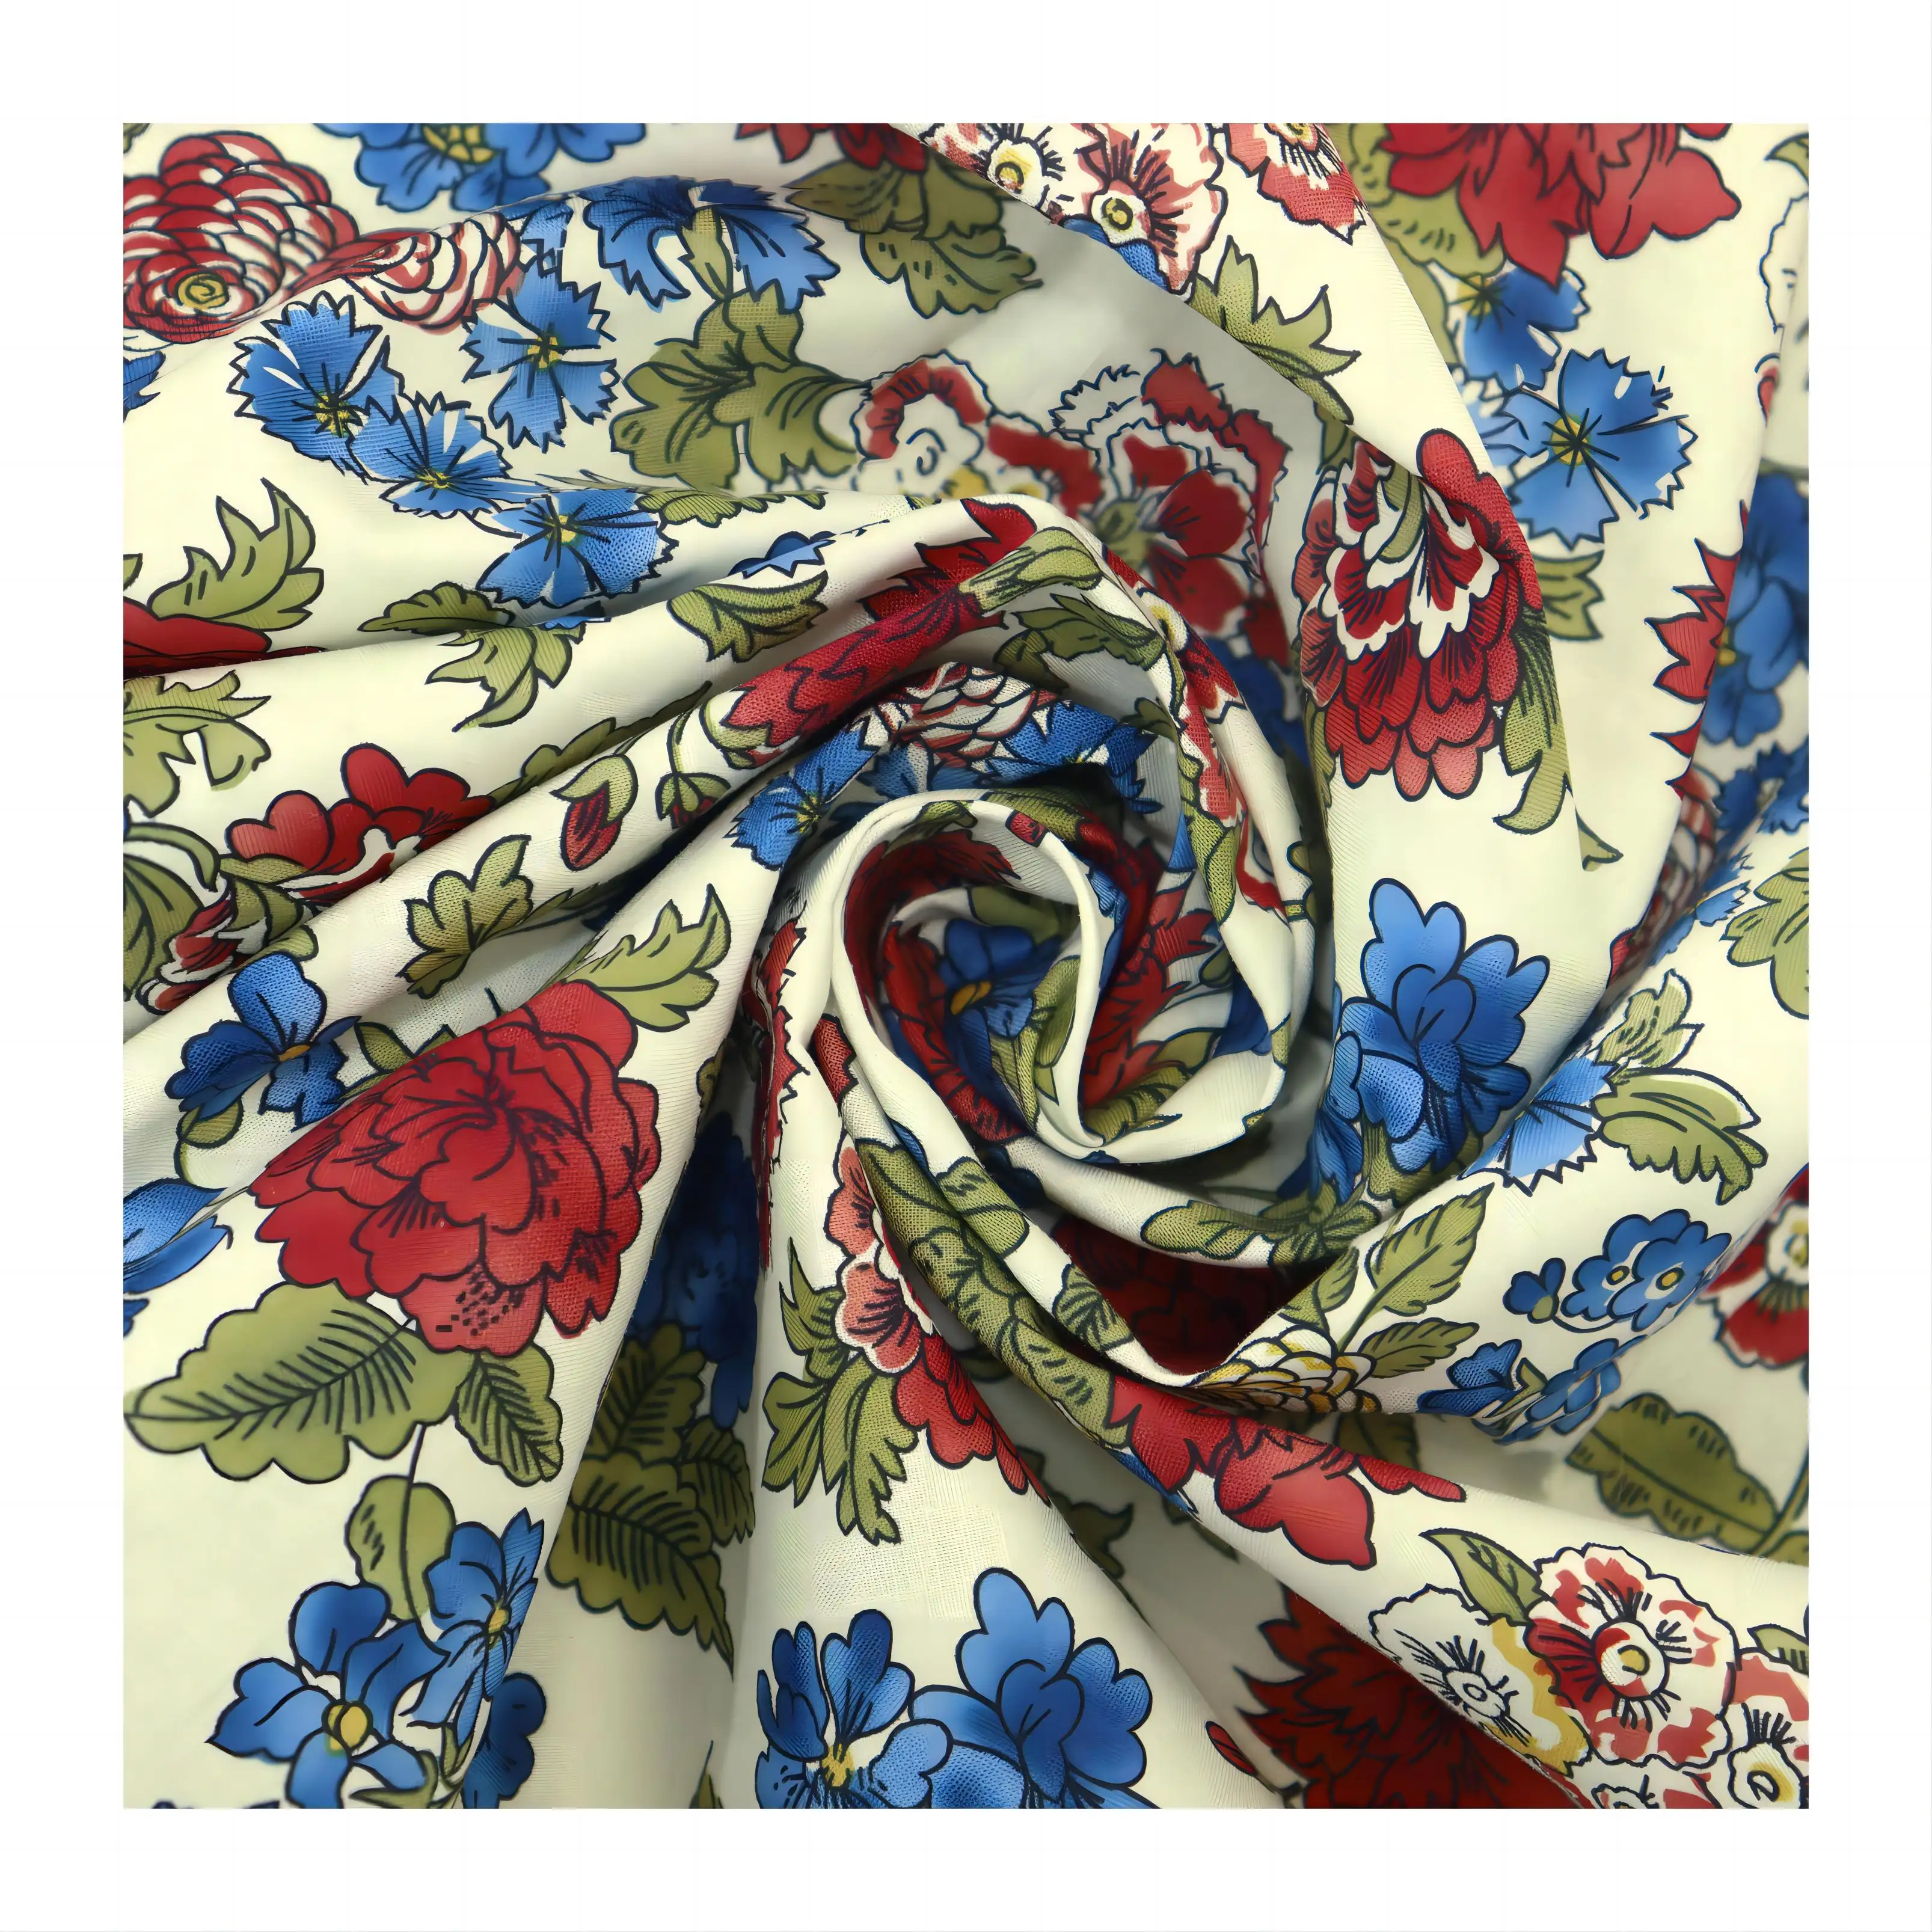 Baixo MOQ padrões personalizados Liberty Londres vermelho rosa flores 100% algodão tecido estampado para roupas vestido